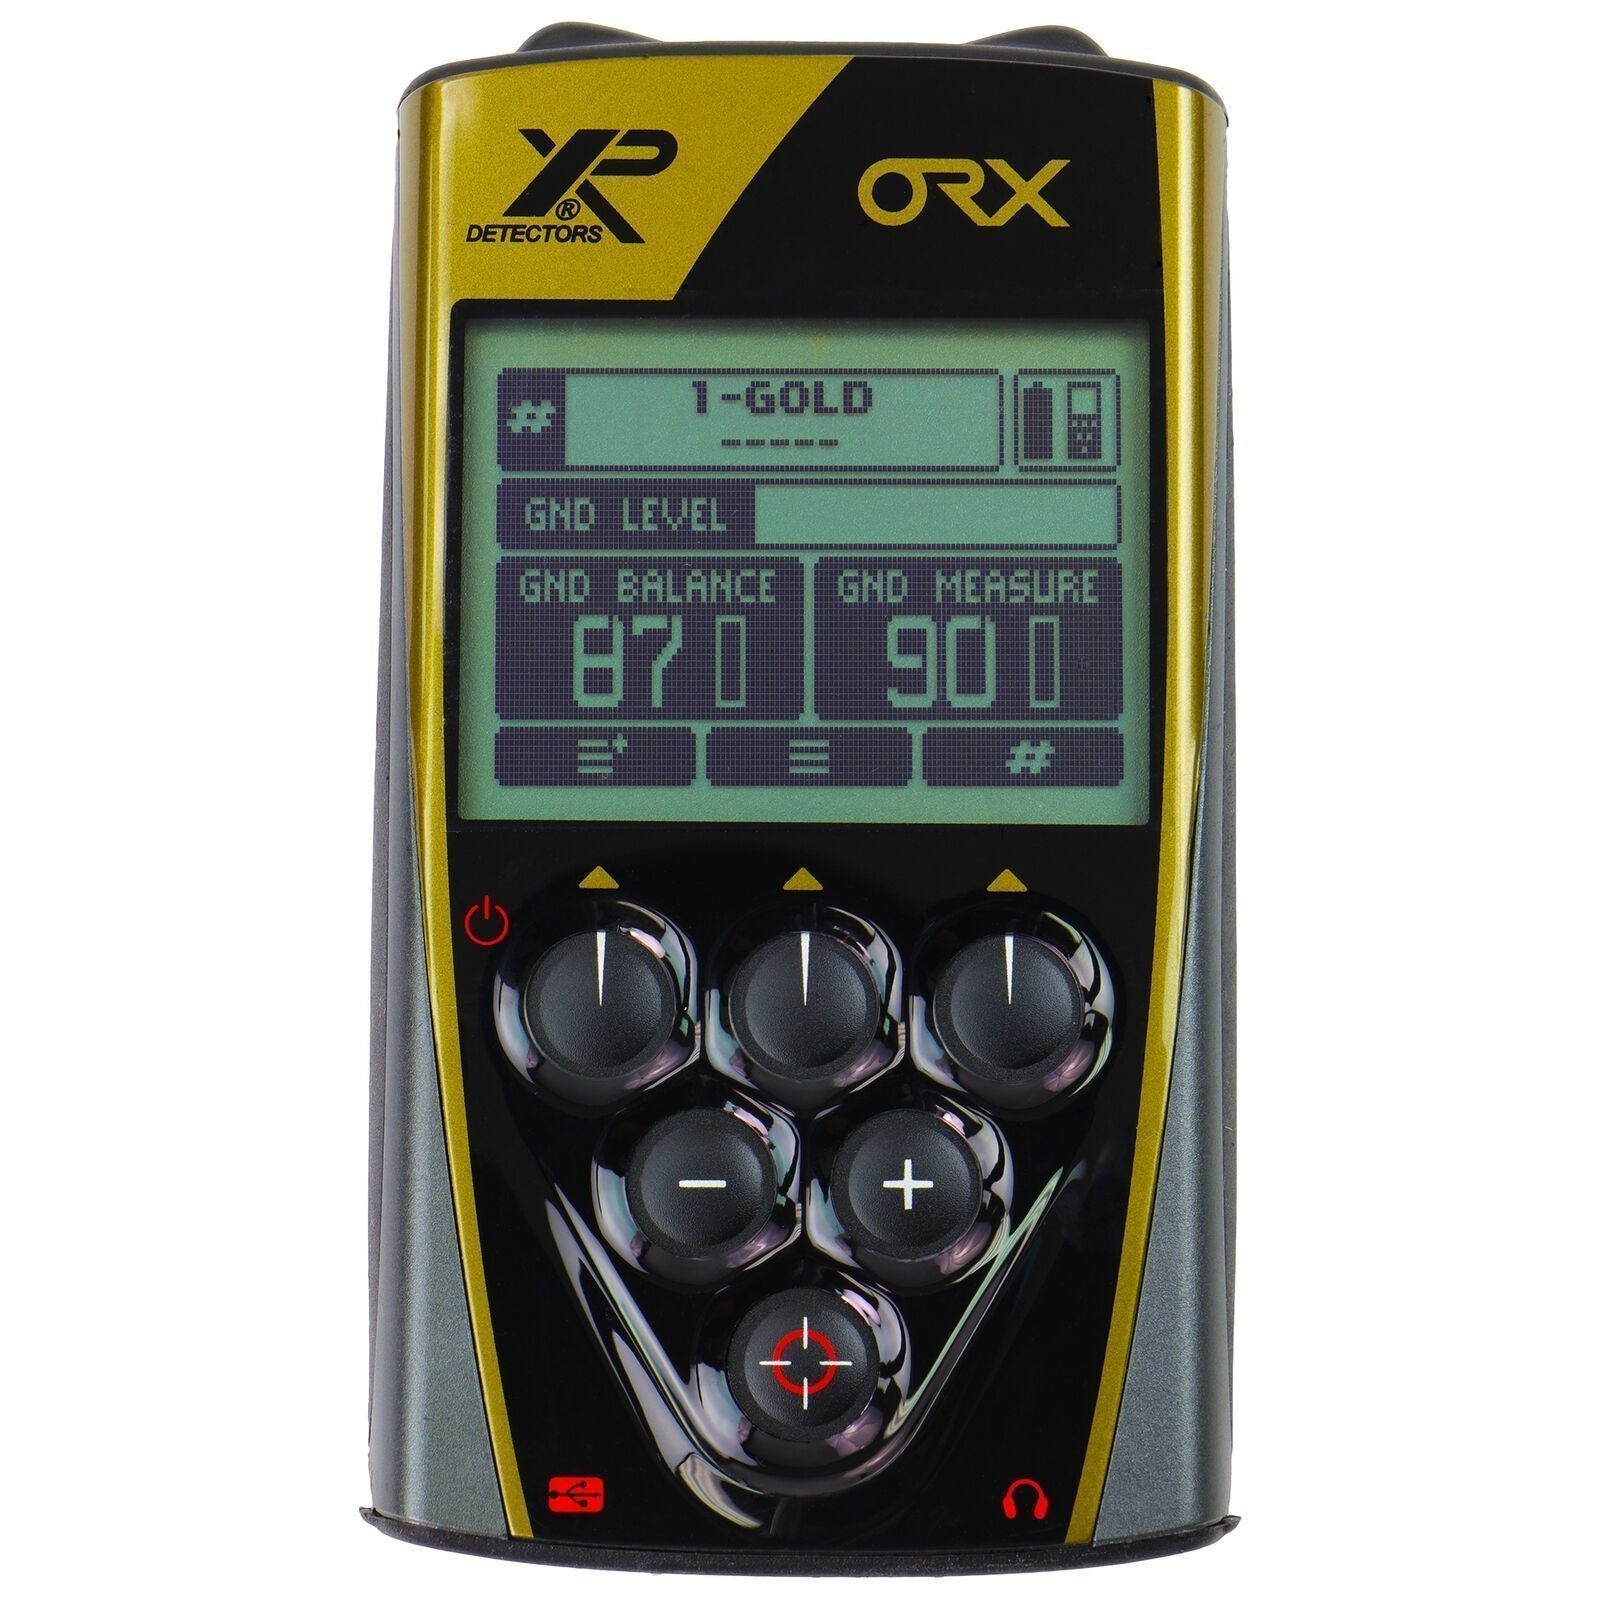 XP ORX Metal Detector 11" X35 Coil-Destination Gold Detectors